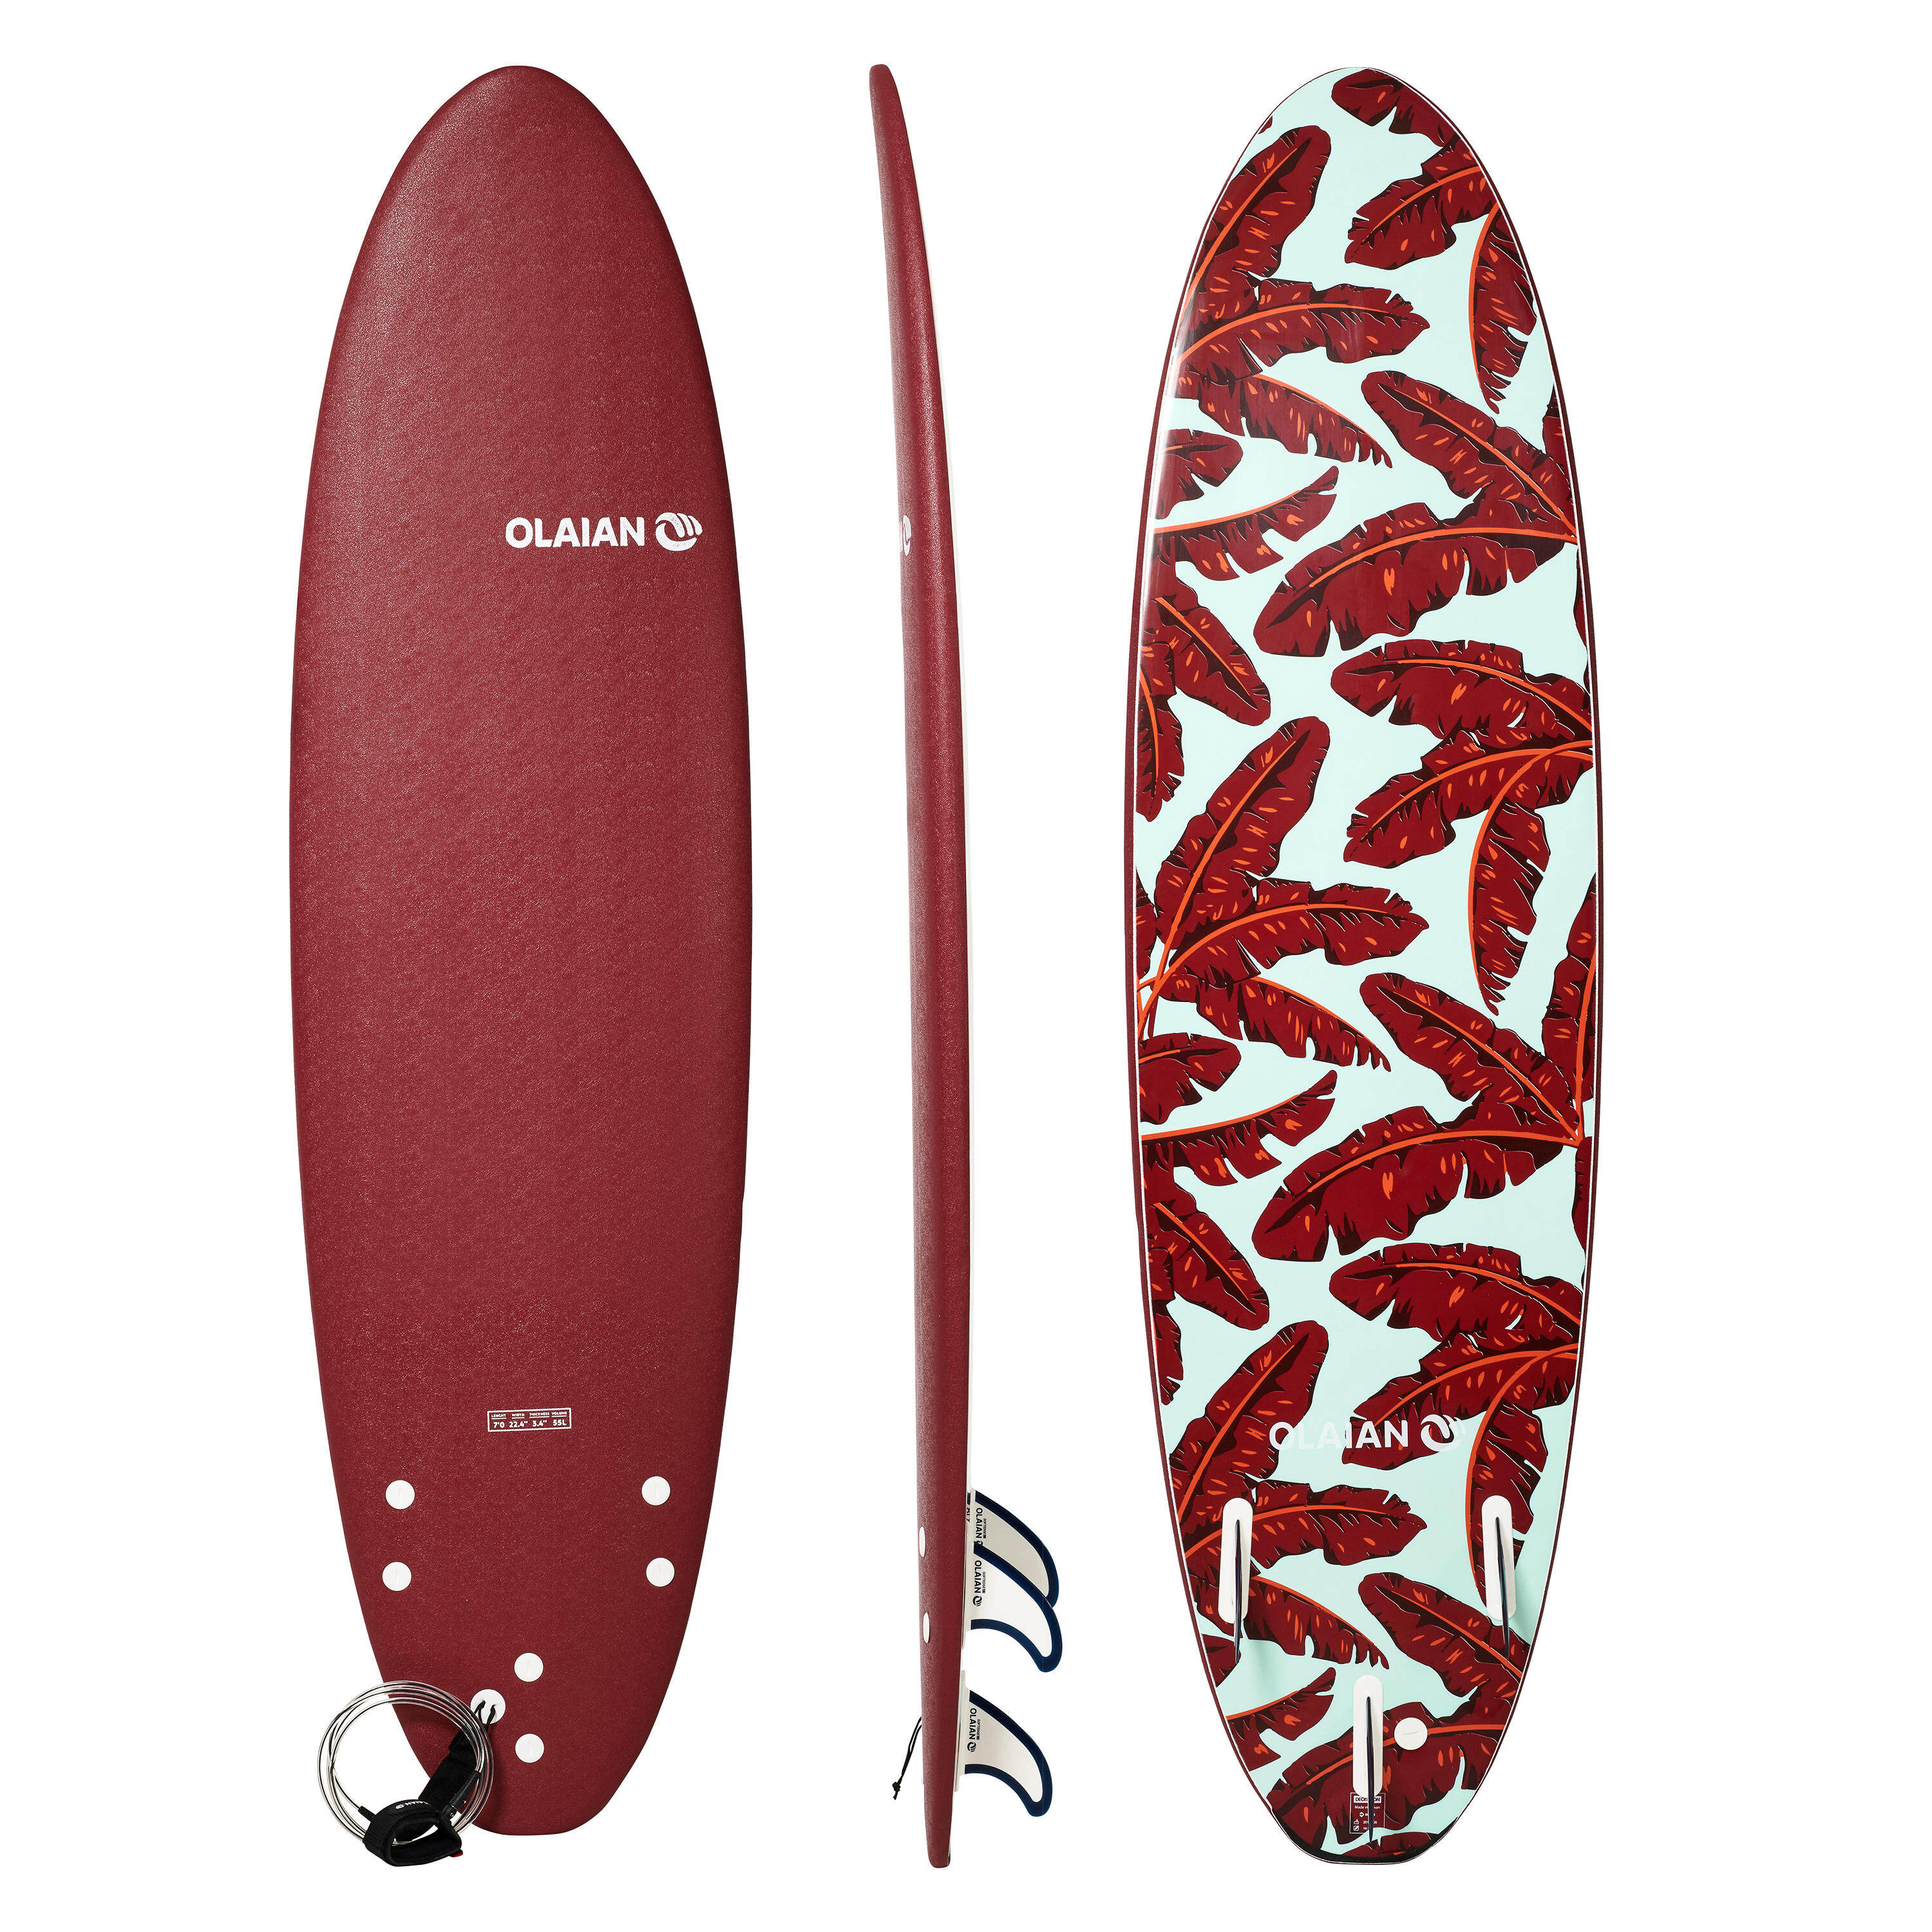 [ส่งฟรี ] SURFBOARD Surfing board เซิร์ฟบอร์ด กระดานโต้คลื่นโฟมรุ่น 500 ขนาด 7 ฟุต มาพร้อมสายโยง 1 อันและครีบ 3 อัน SURFBOARD Foam 500 7'. Supplied with a leash and three fins. surfskate surfboard fin wakeboard ของแท้ รับประกัน